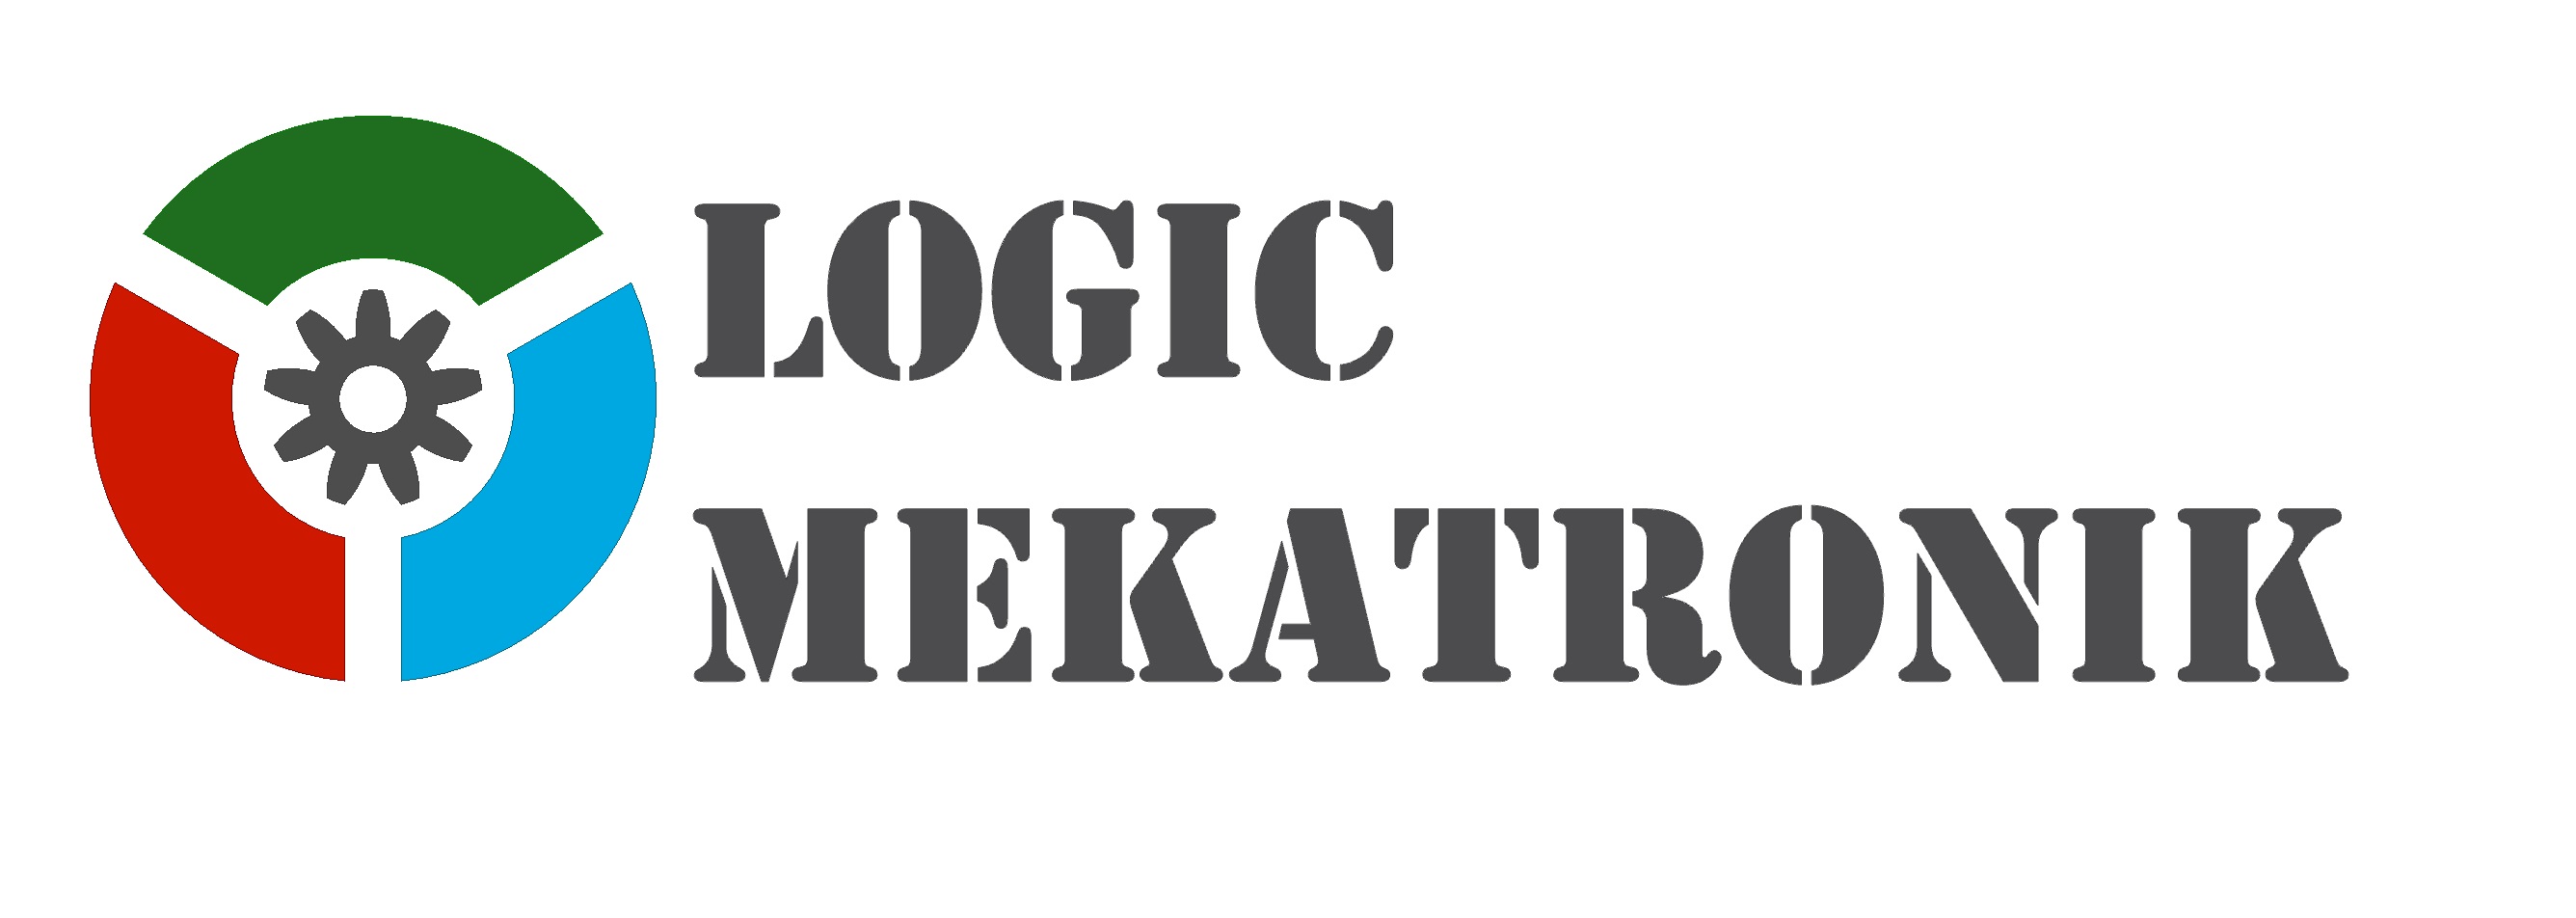 Logic Mekatronik Mühendislik Sanayi ve Ticaret A.Ş. Logosu